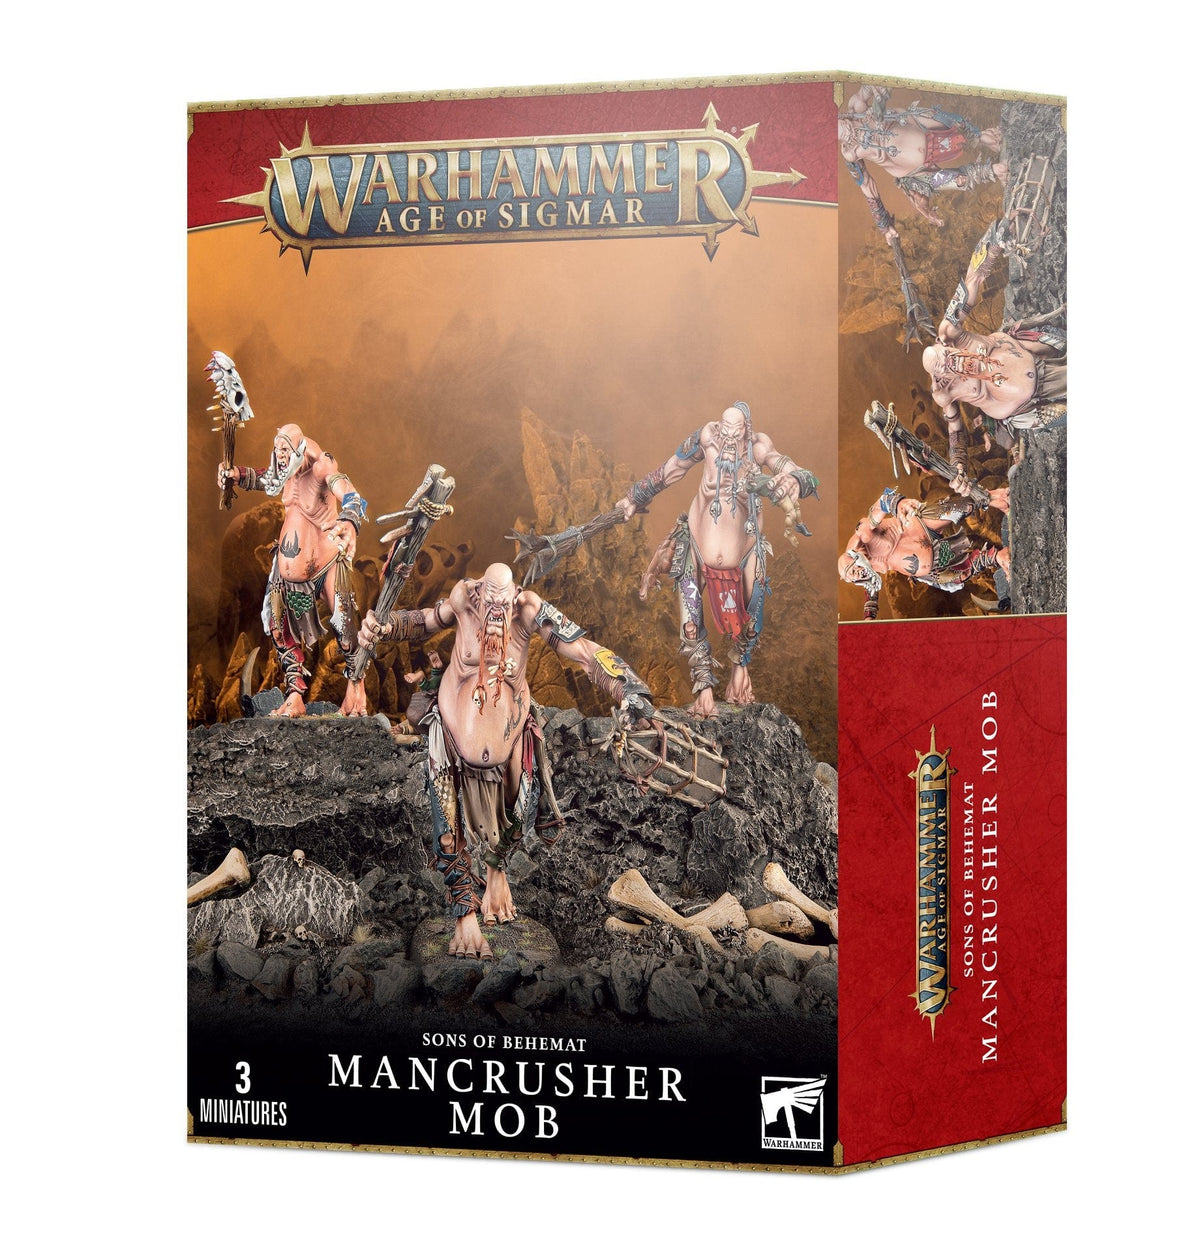 Warhammer - Age of Sigmar: Sons of Behemat - Mancrusher Mob - Third Eye